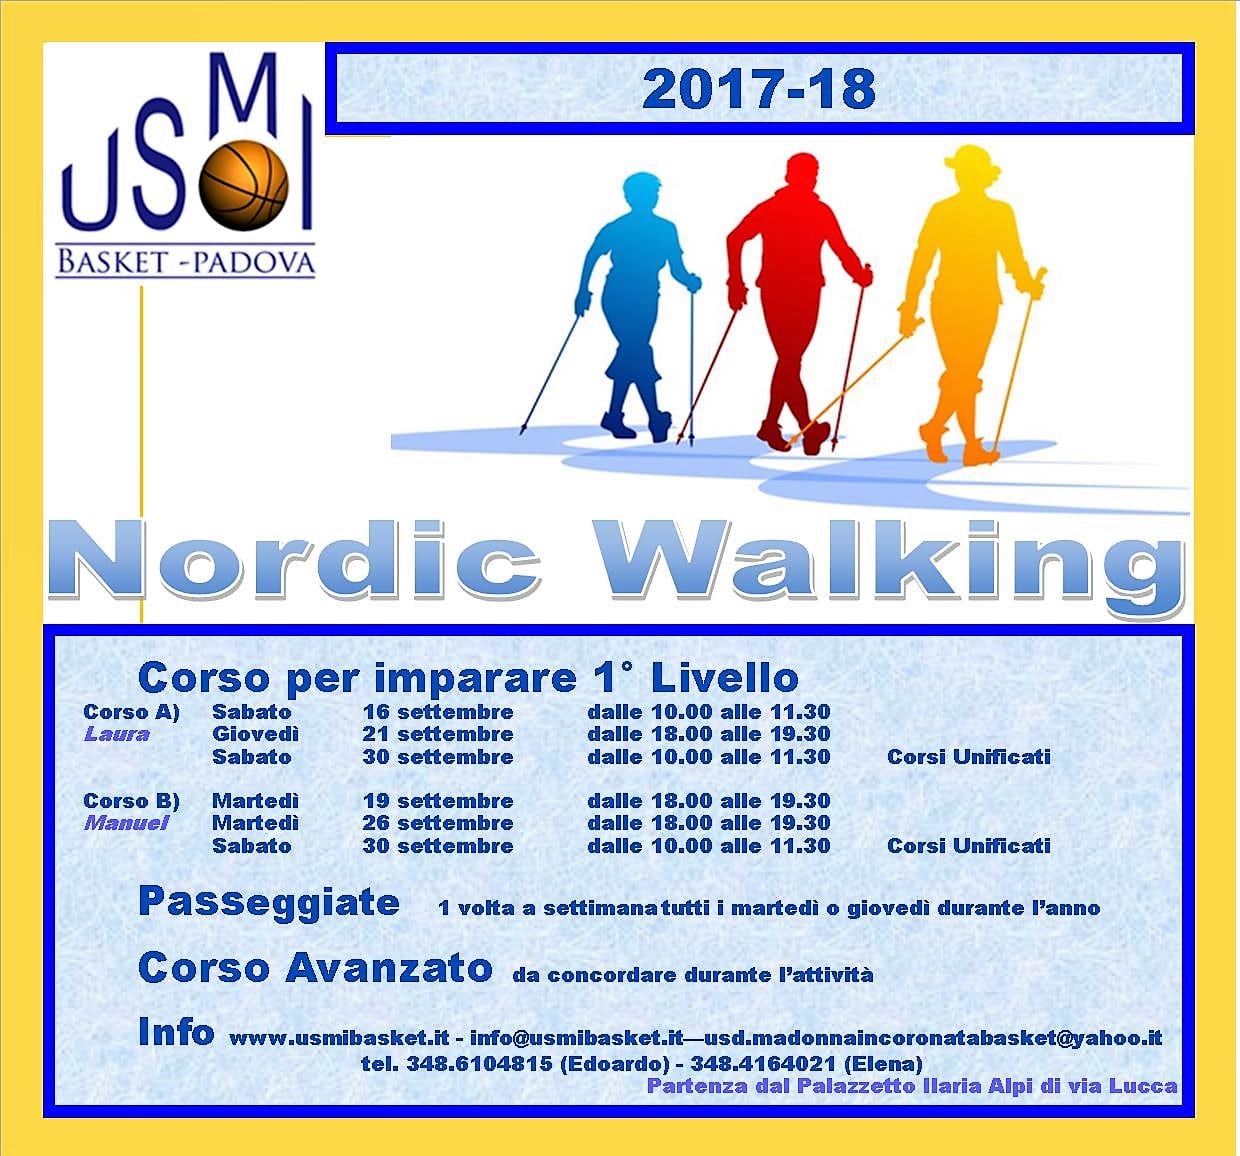 USMI_Nordic_Walking_2017-18